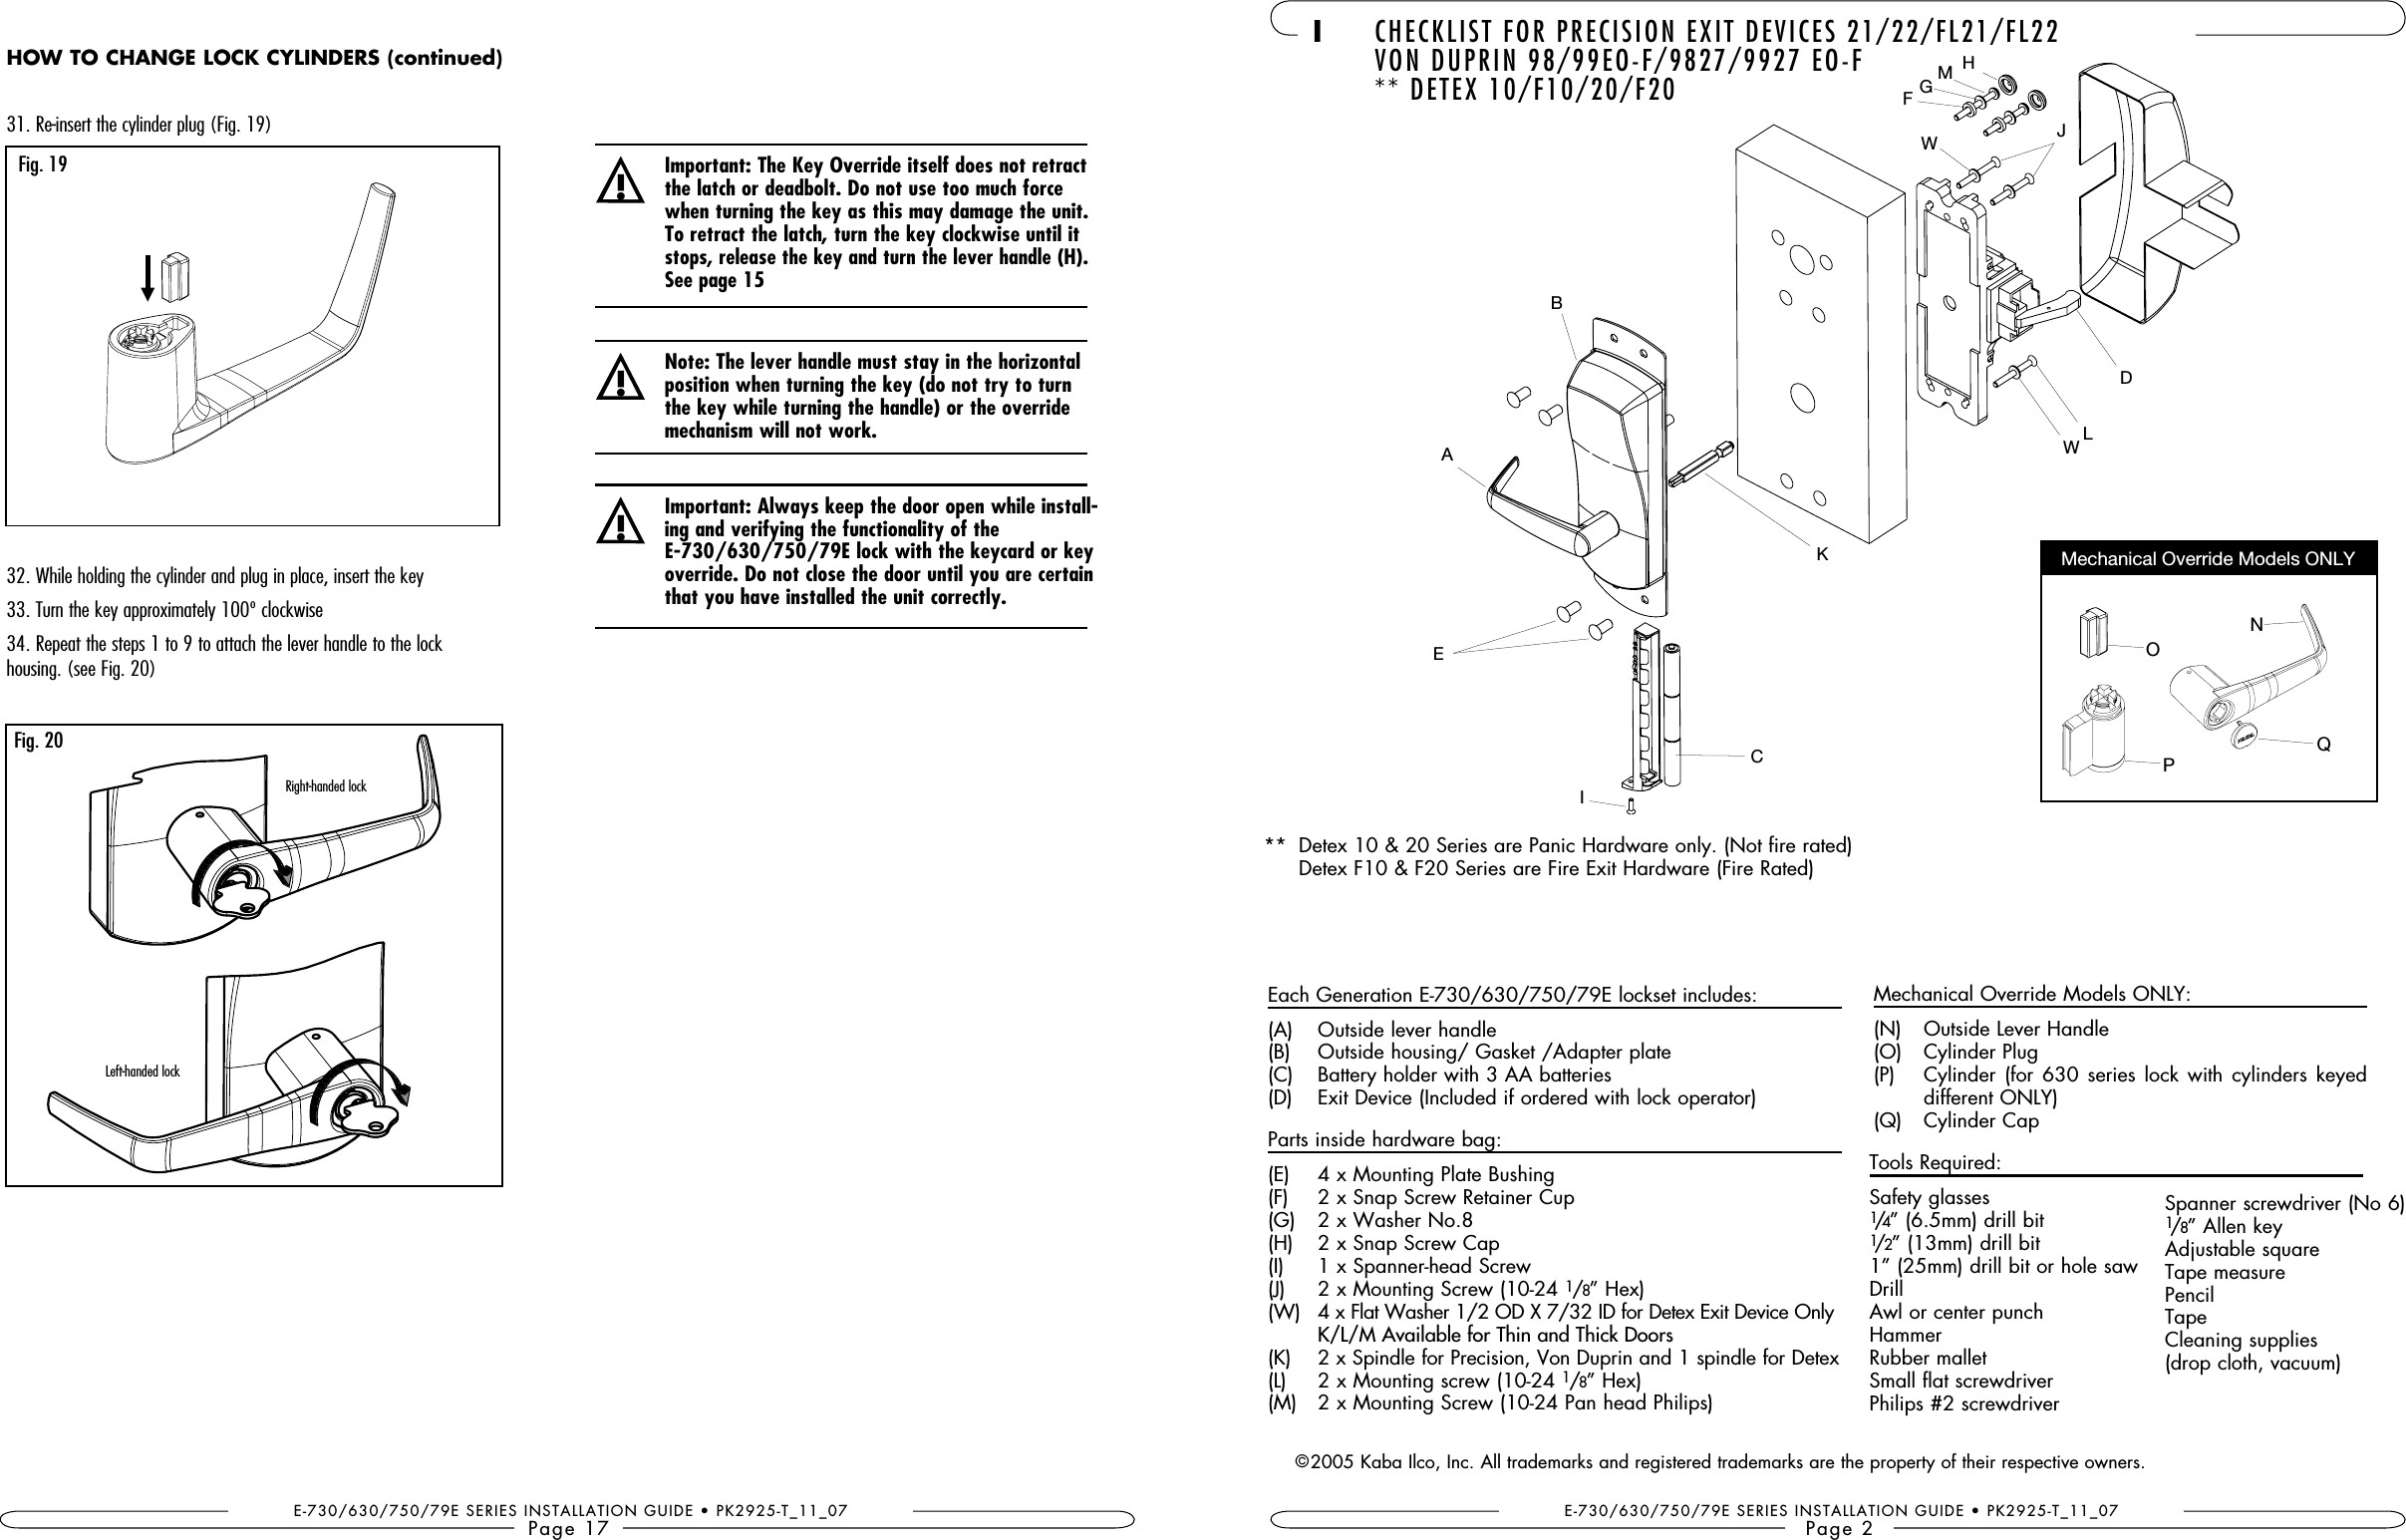 Door Latch Mechanism Diagram Csc790 Door Lock User Manual Manual Kaba Ilco Inc Of Door Latch Mechanism Diagram